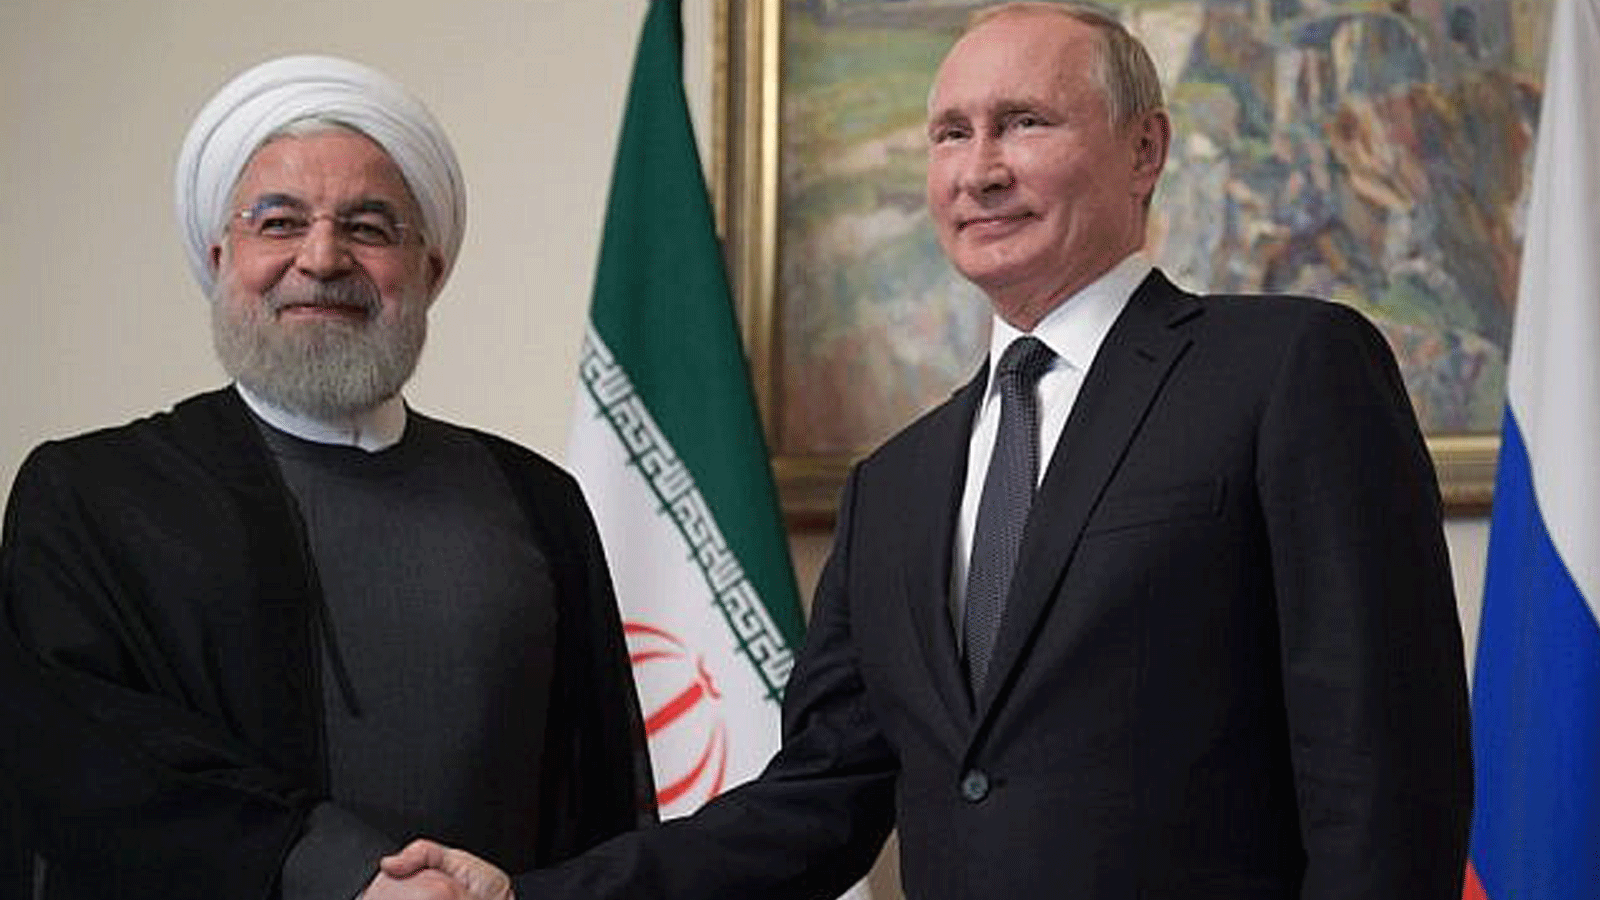 الرئيس الروسي فلاديمير بوتين (إلى اليمين) يصافح الرئيس الإيراني حسن روحاني خلال اجتماع للمجلس الاقتصادي الأوراسي الأعلى في يريفان في 1تشرين الأول/ أكتوبر 2019